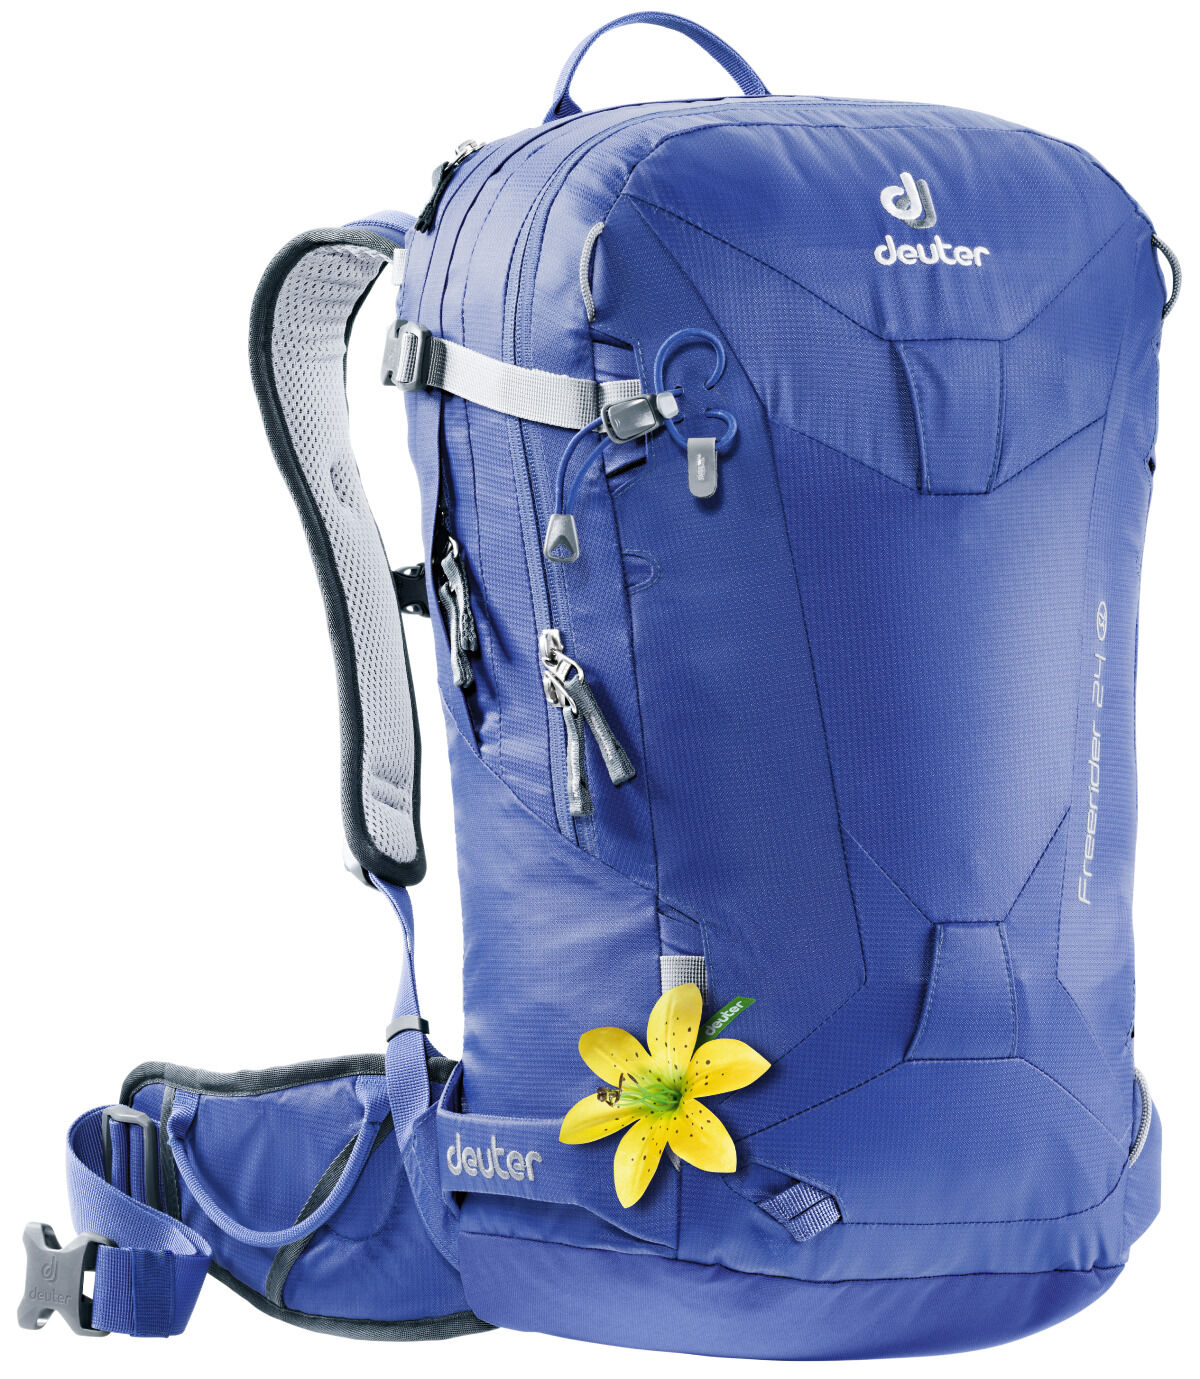 Deuter - Freerider 24 SL - Ski Touring backpack - Women's